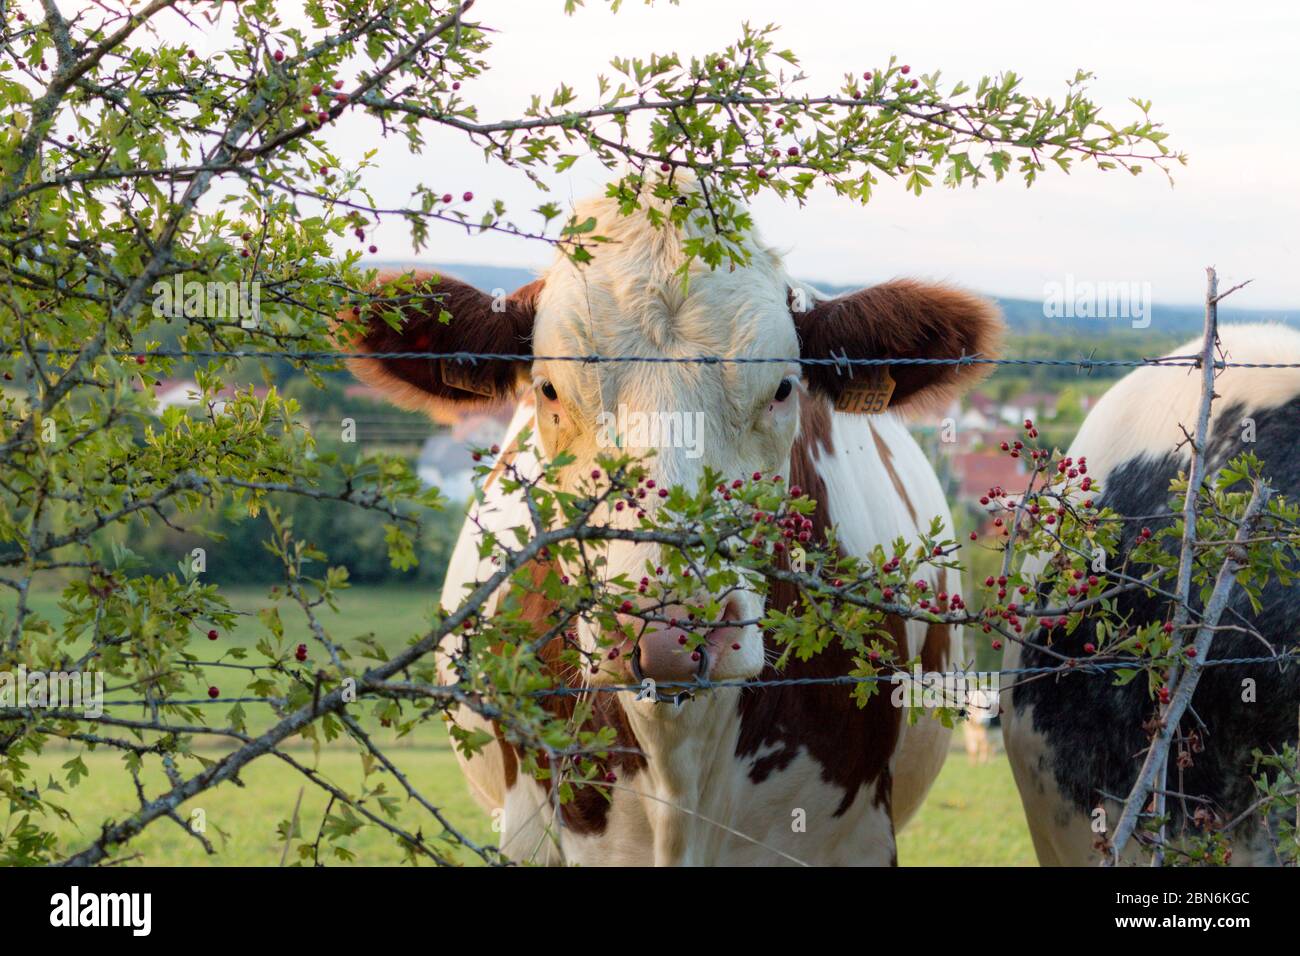 Jolie jeune vache laitière Montbeliarde avec un anneau anti-succion dans le nez nous regardant cachée derrière des branches d'arbustes à baies et une Stockfoto